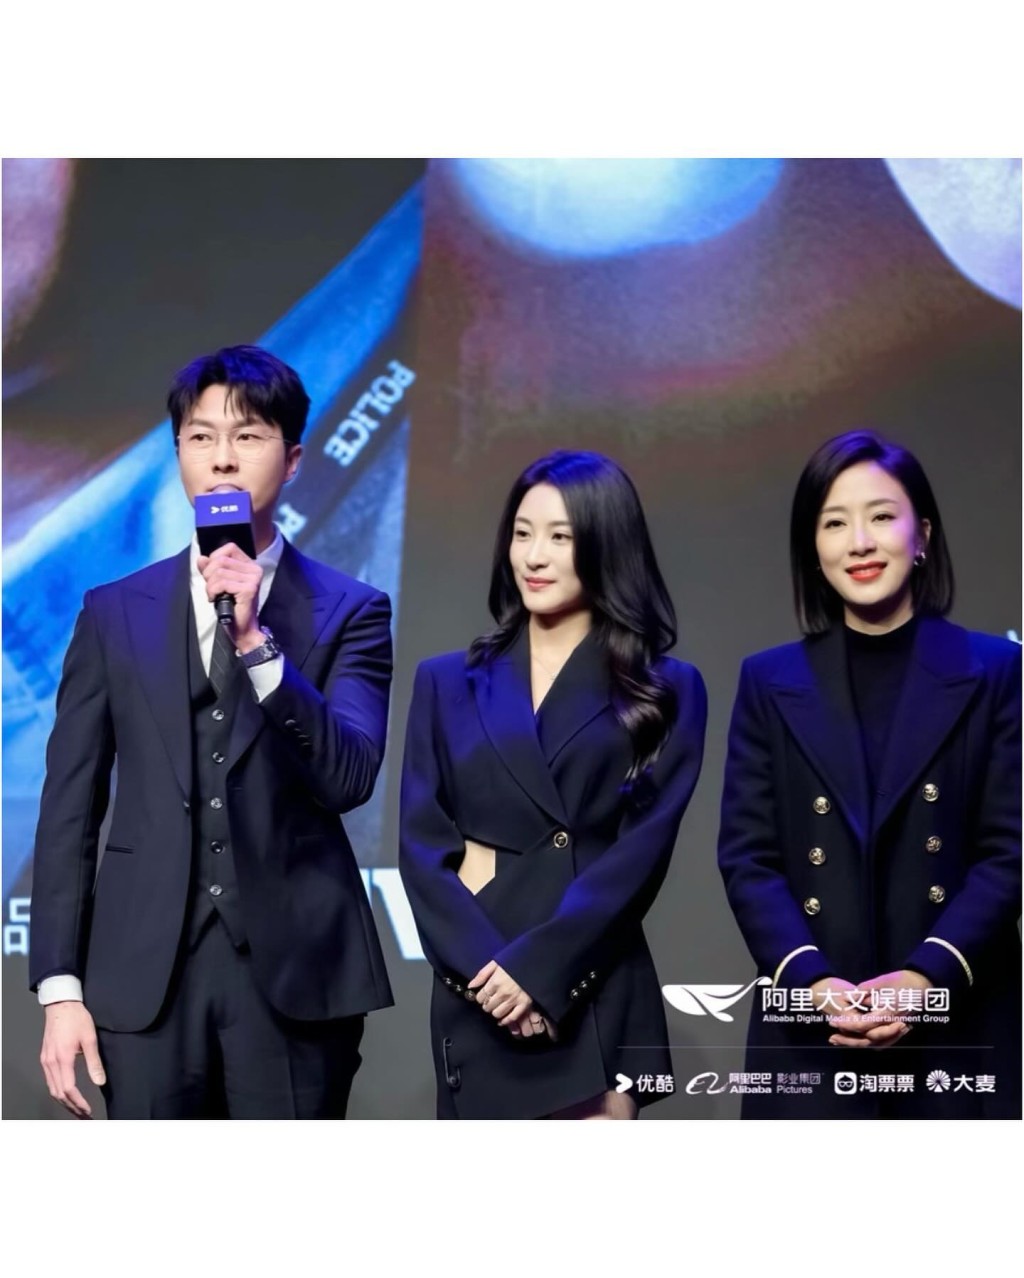 林夏薇与王浩信及杨茜尧现身宣传《黑色月光》。